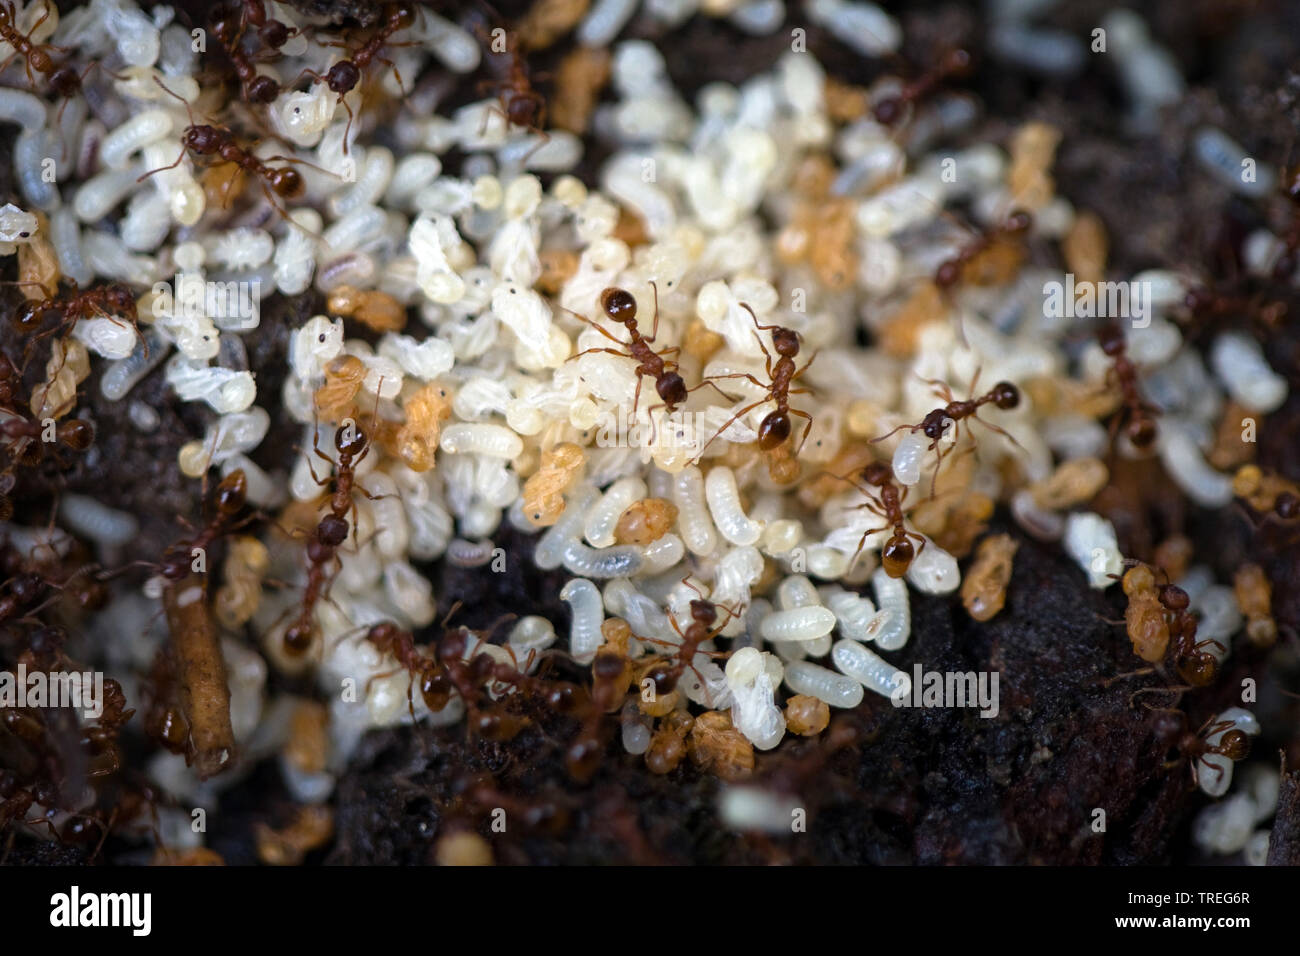 Ant nido con huevos y imagos, Alemania Foto de stock